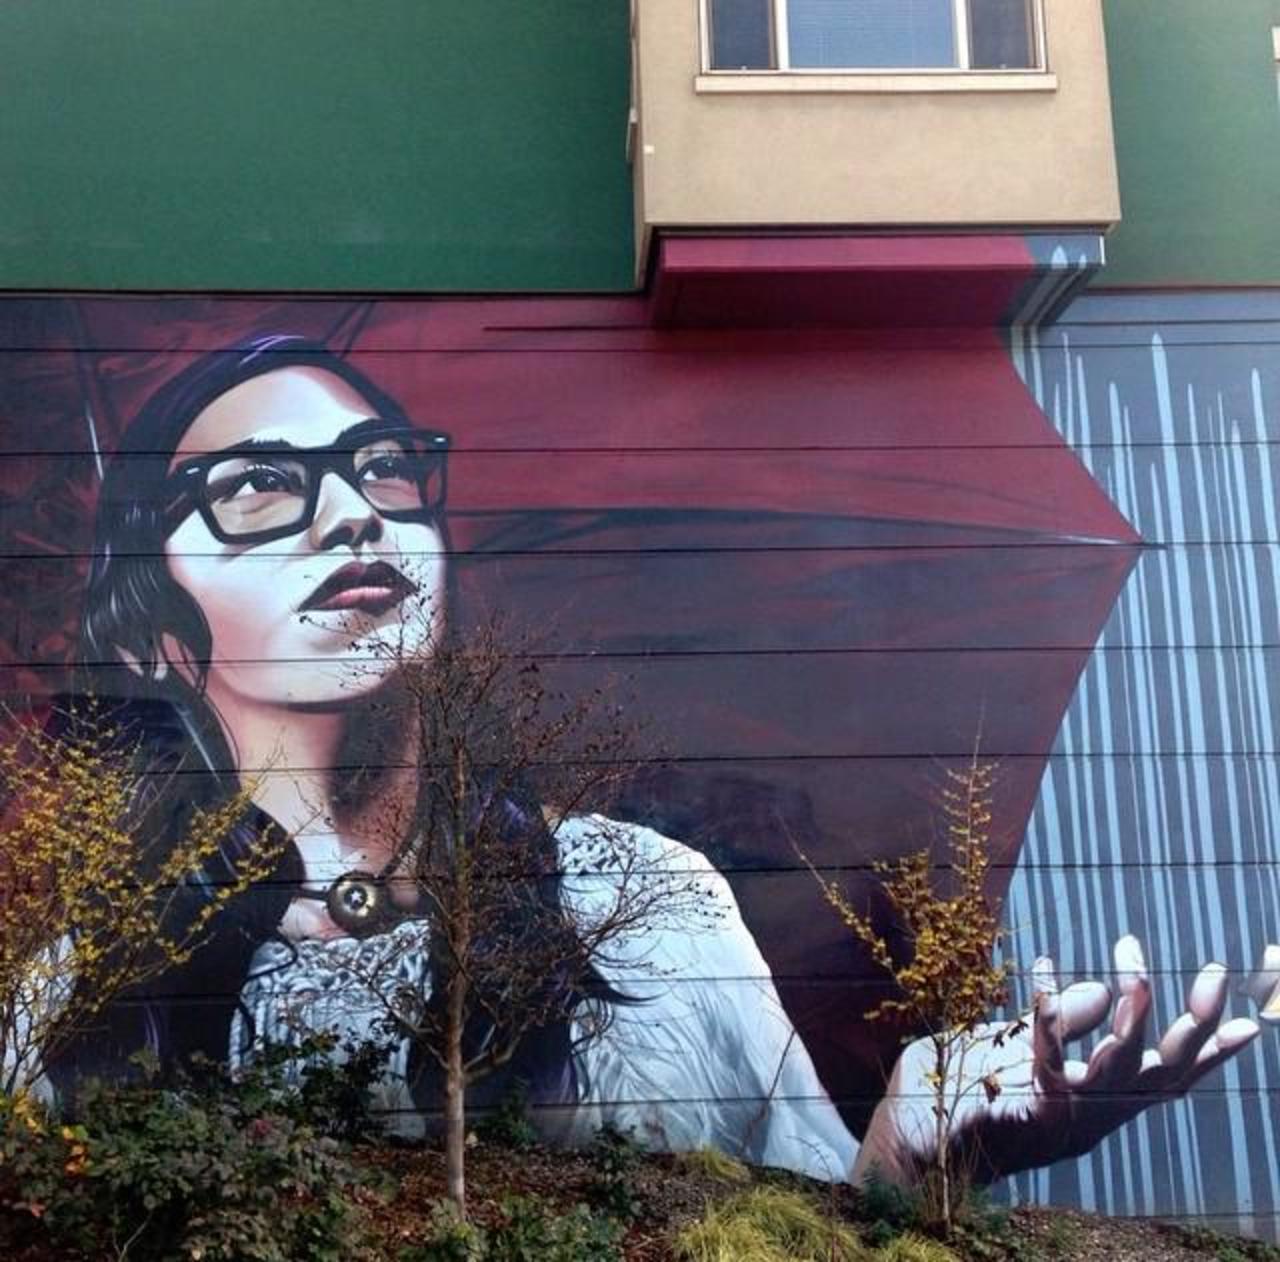 Artist Eras MFK Street Art piece in Capitol Hill, Seattle

#art #mural #graffiti #streetart http://t.co/OycCaHODdC